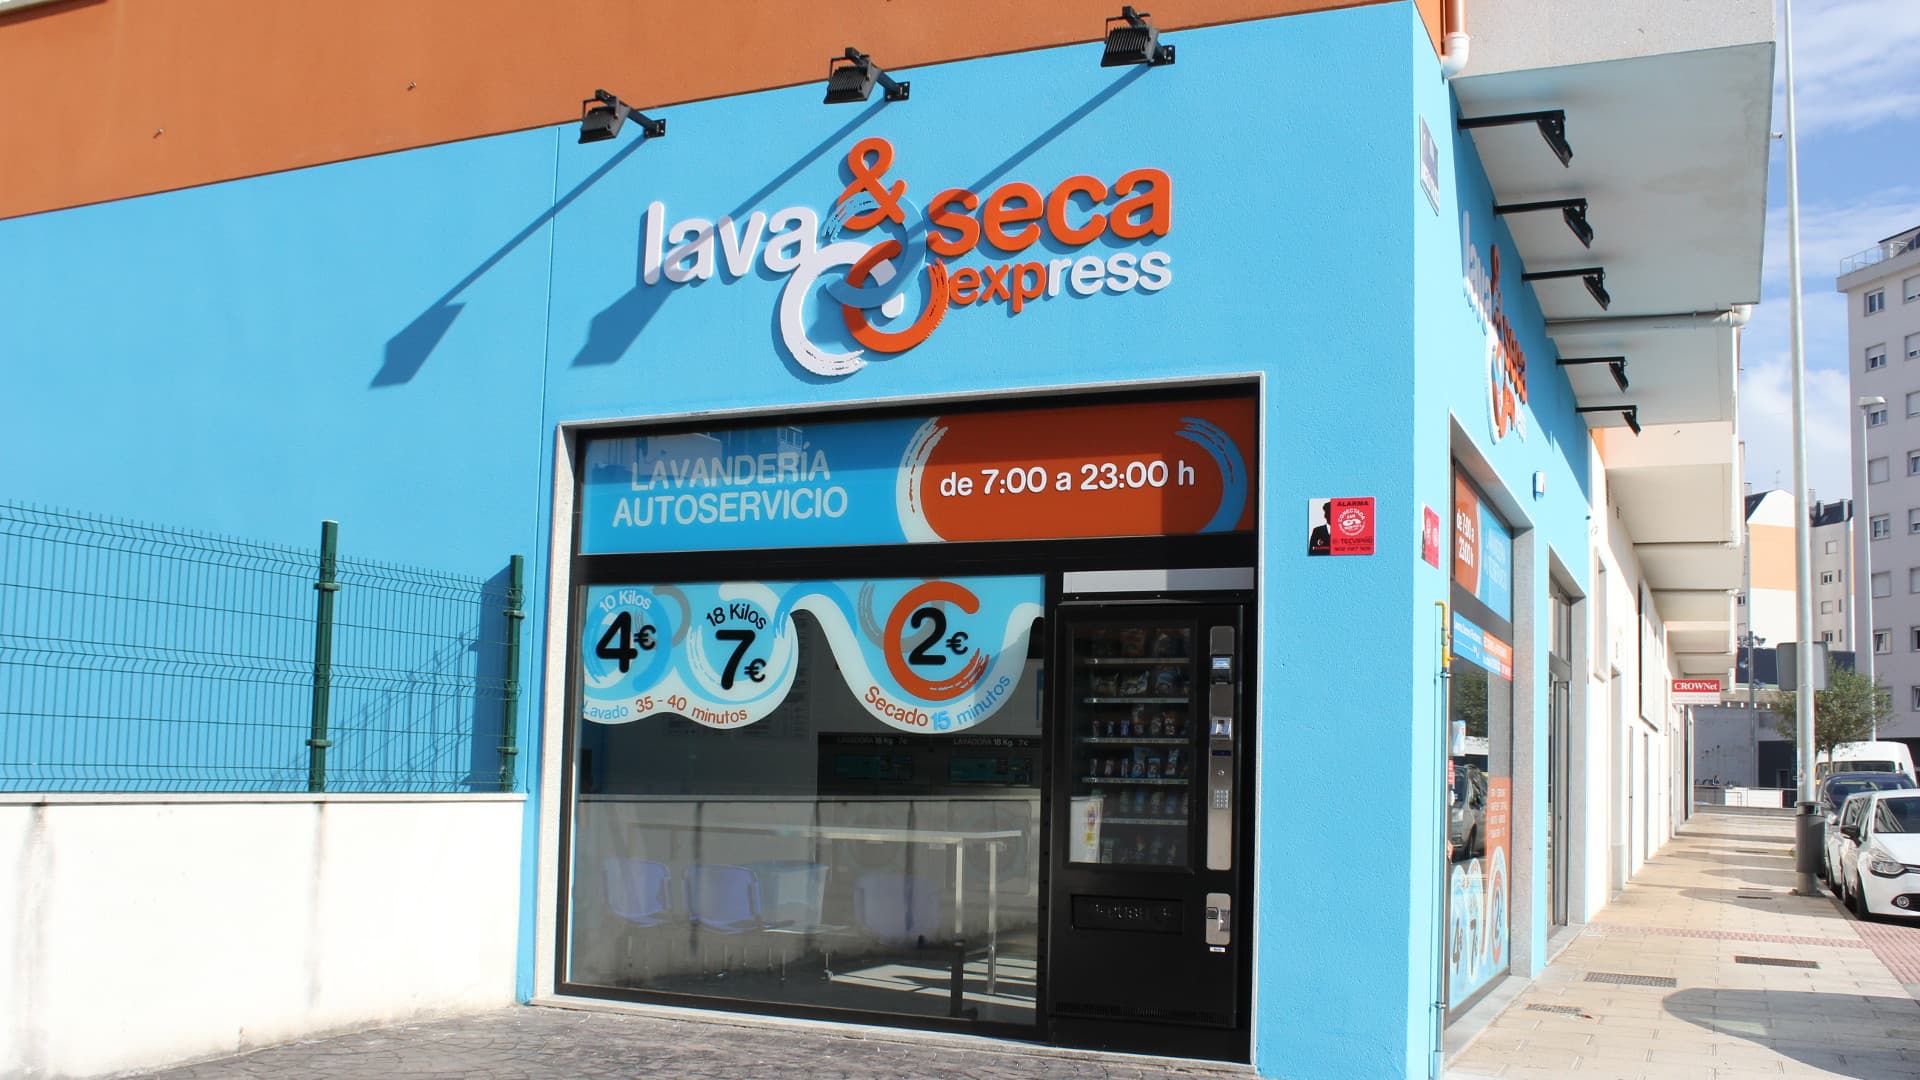 Conoce nuestras lavanderías autoservicio en Lugo